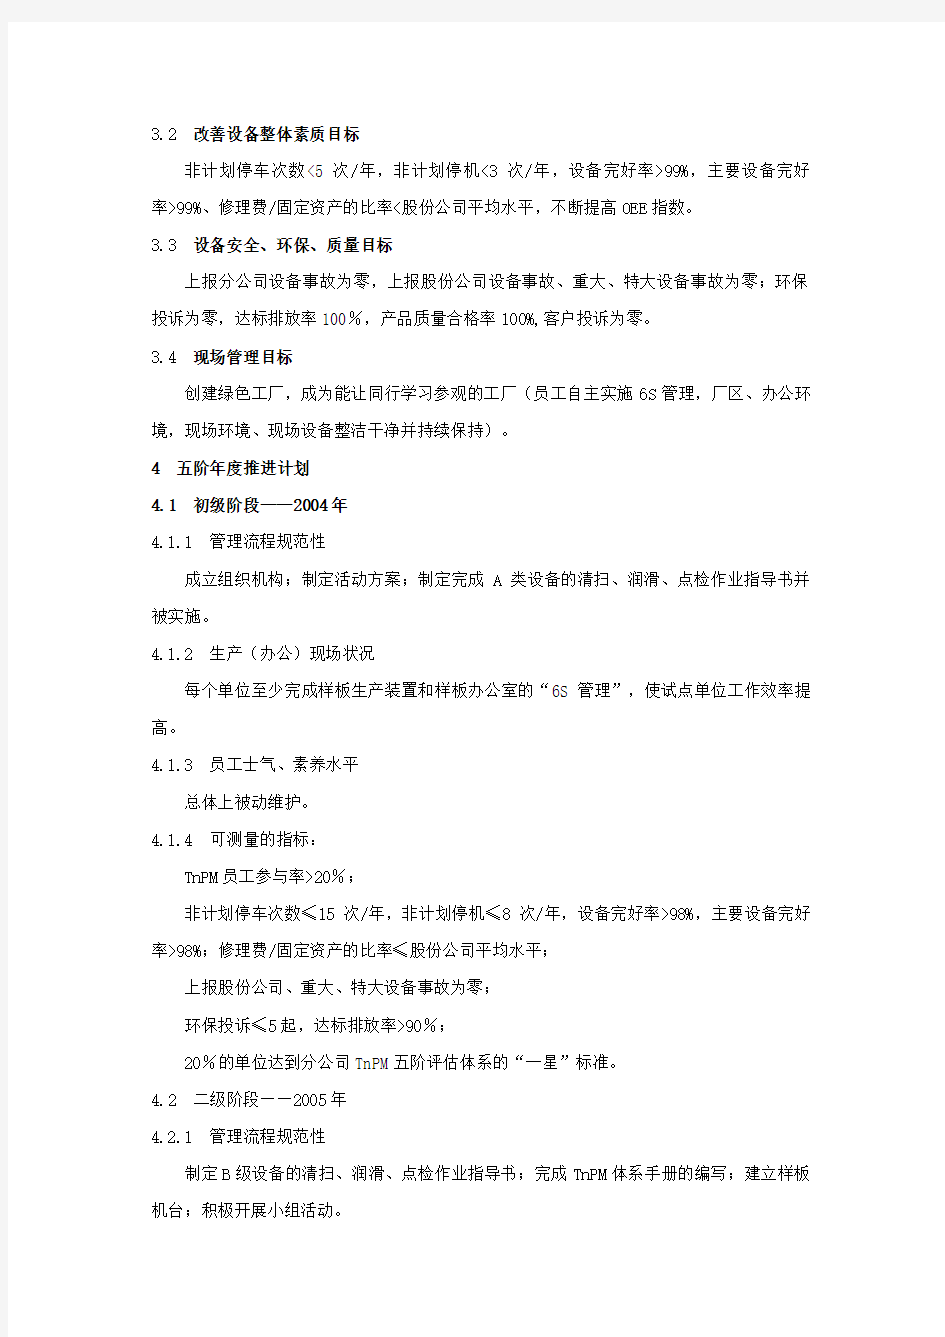 中石化广州分公司TnPM体系文件